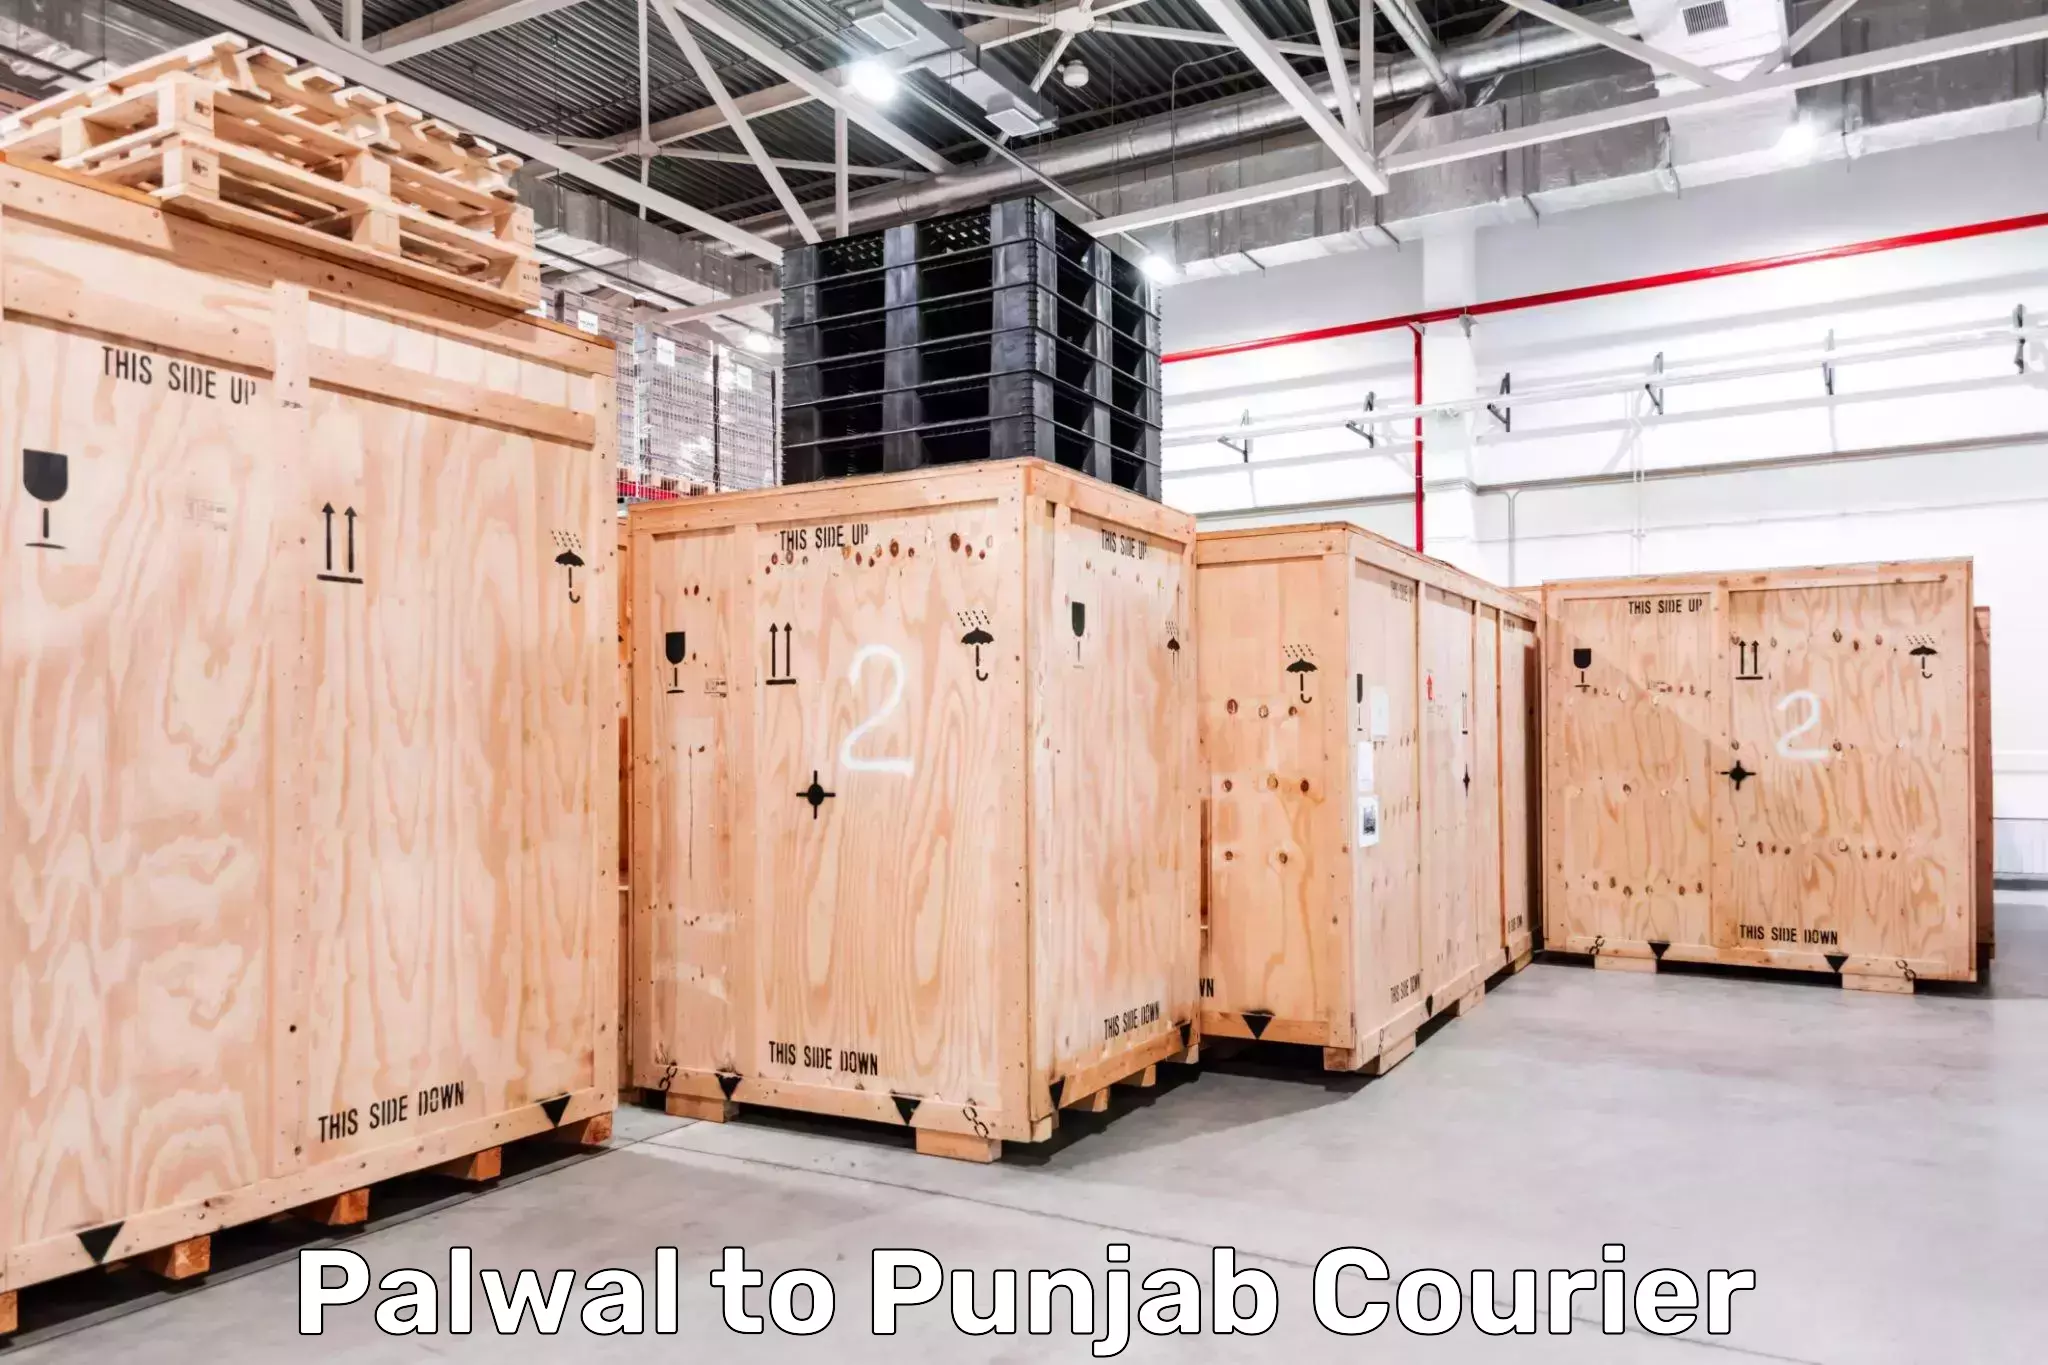 Tracking updates Palwal to Central University of Punjab Bathinda